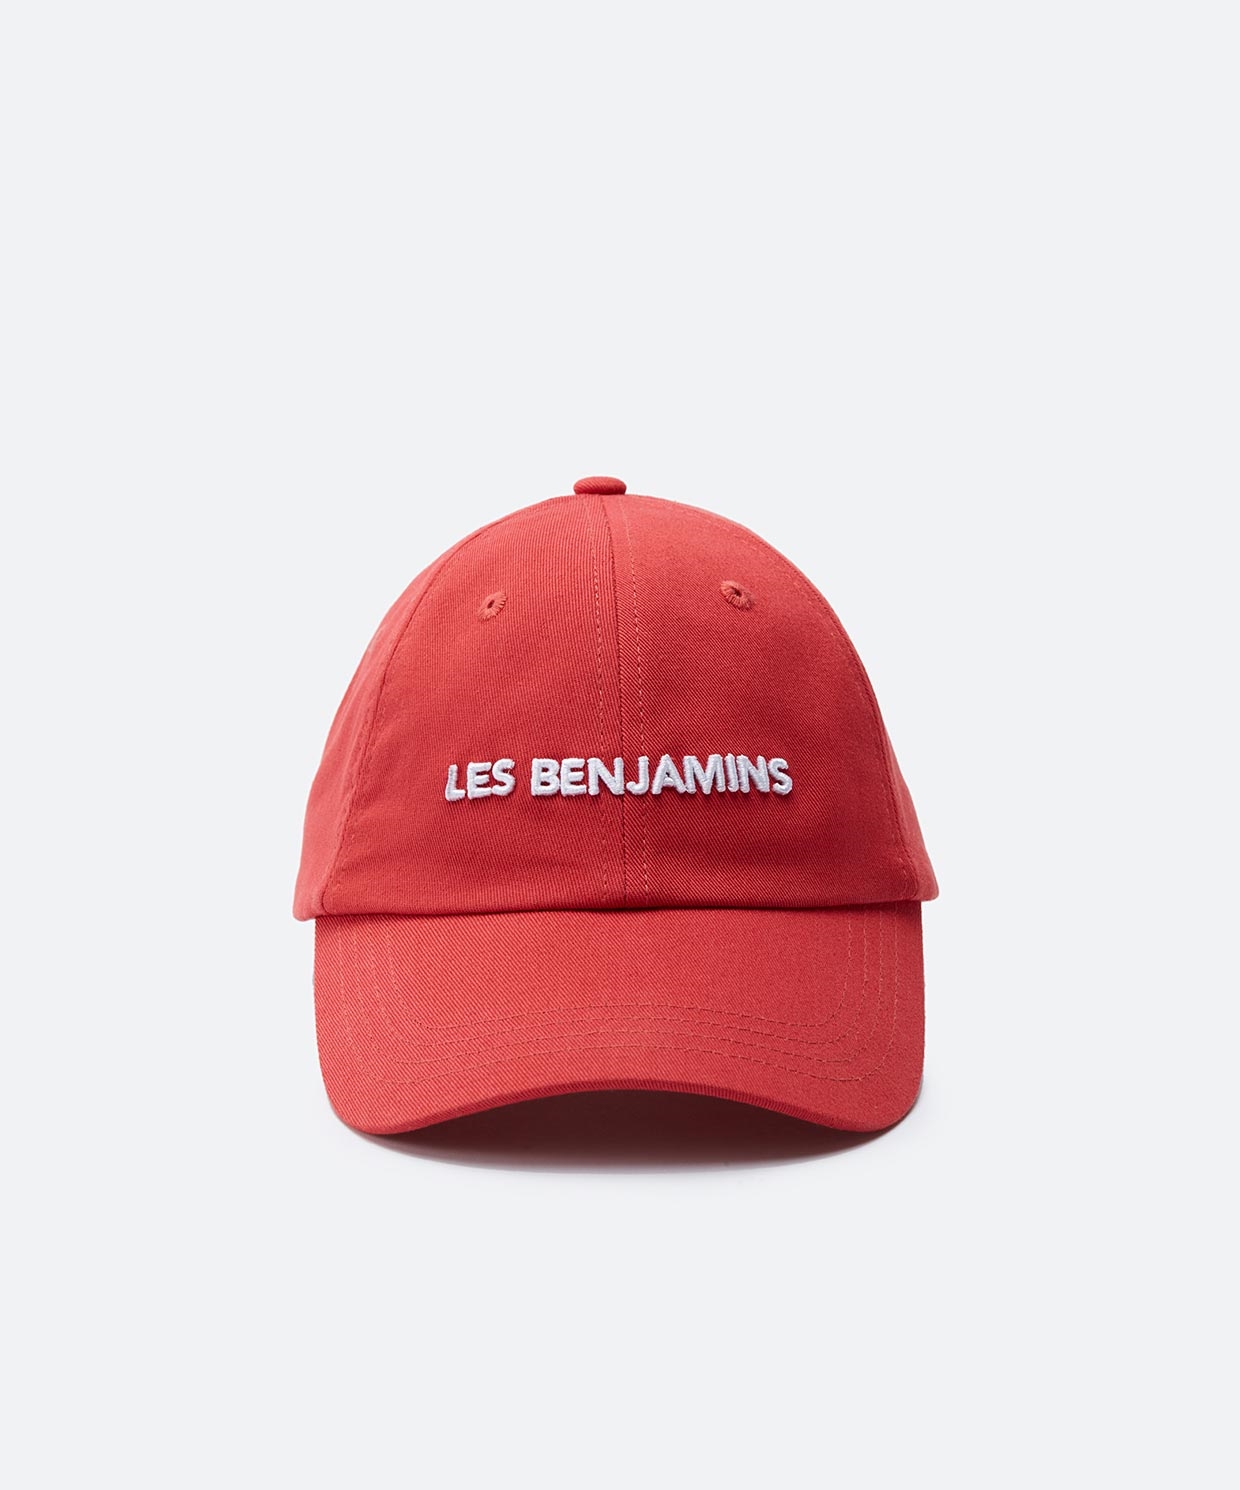 resm Les Benjamins Caps 305